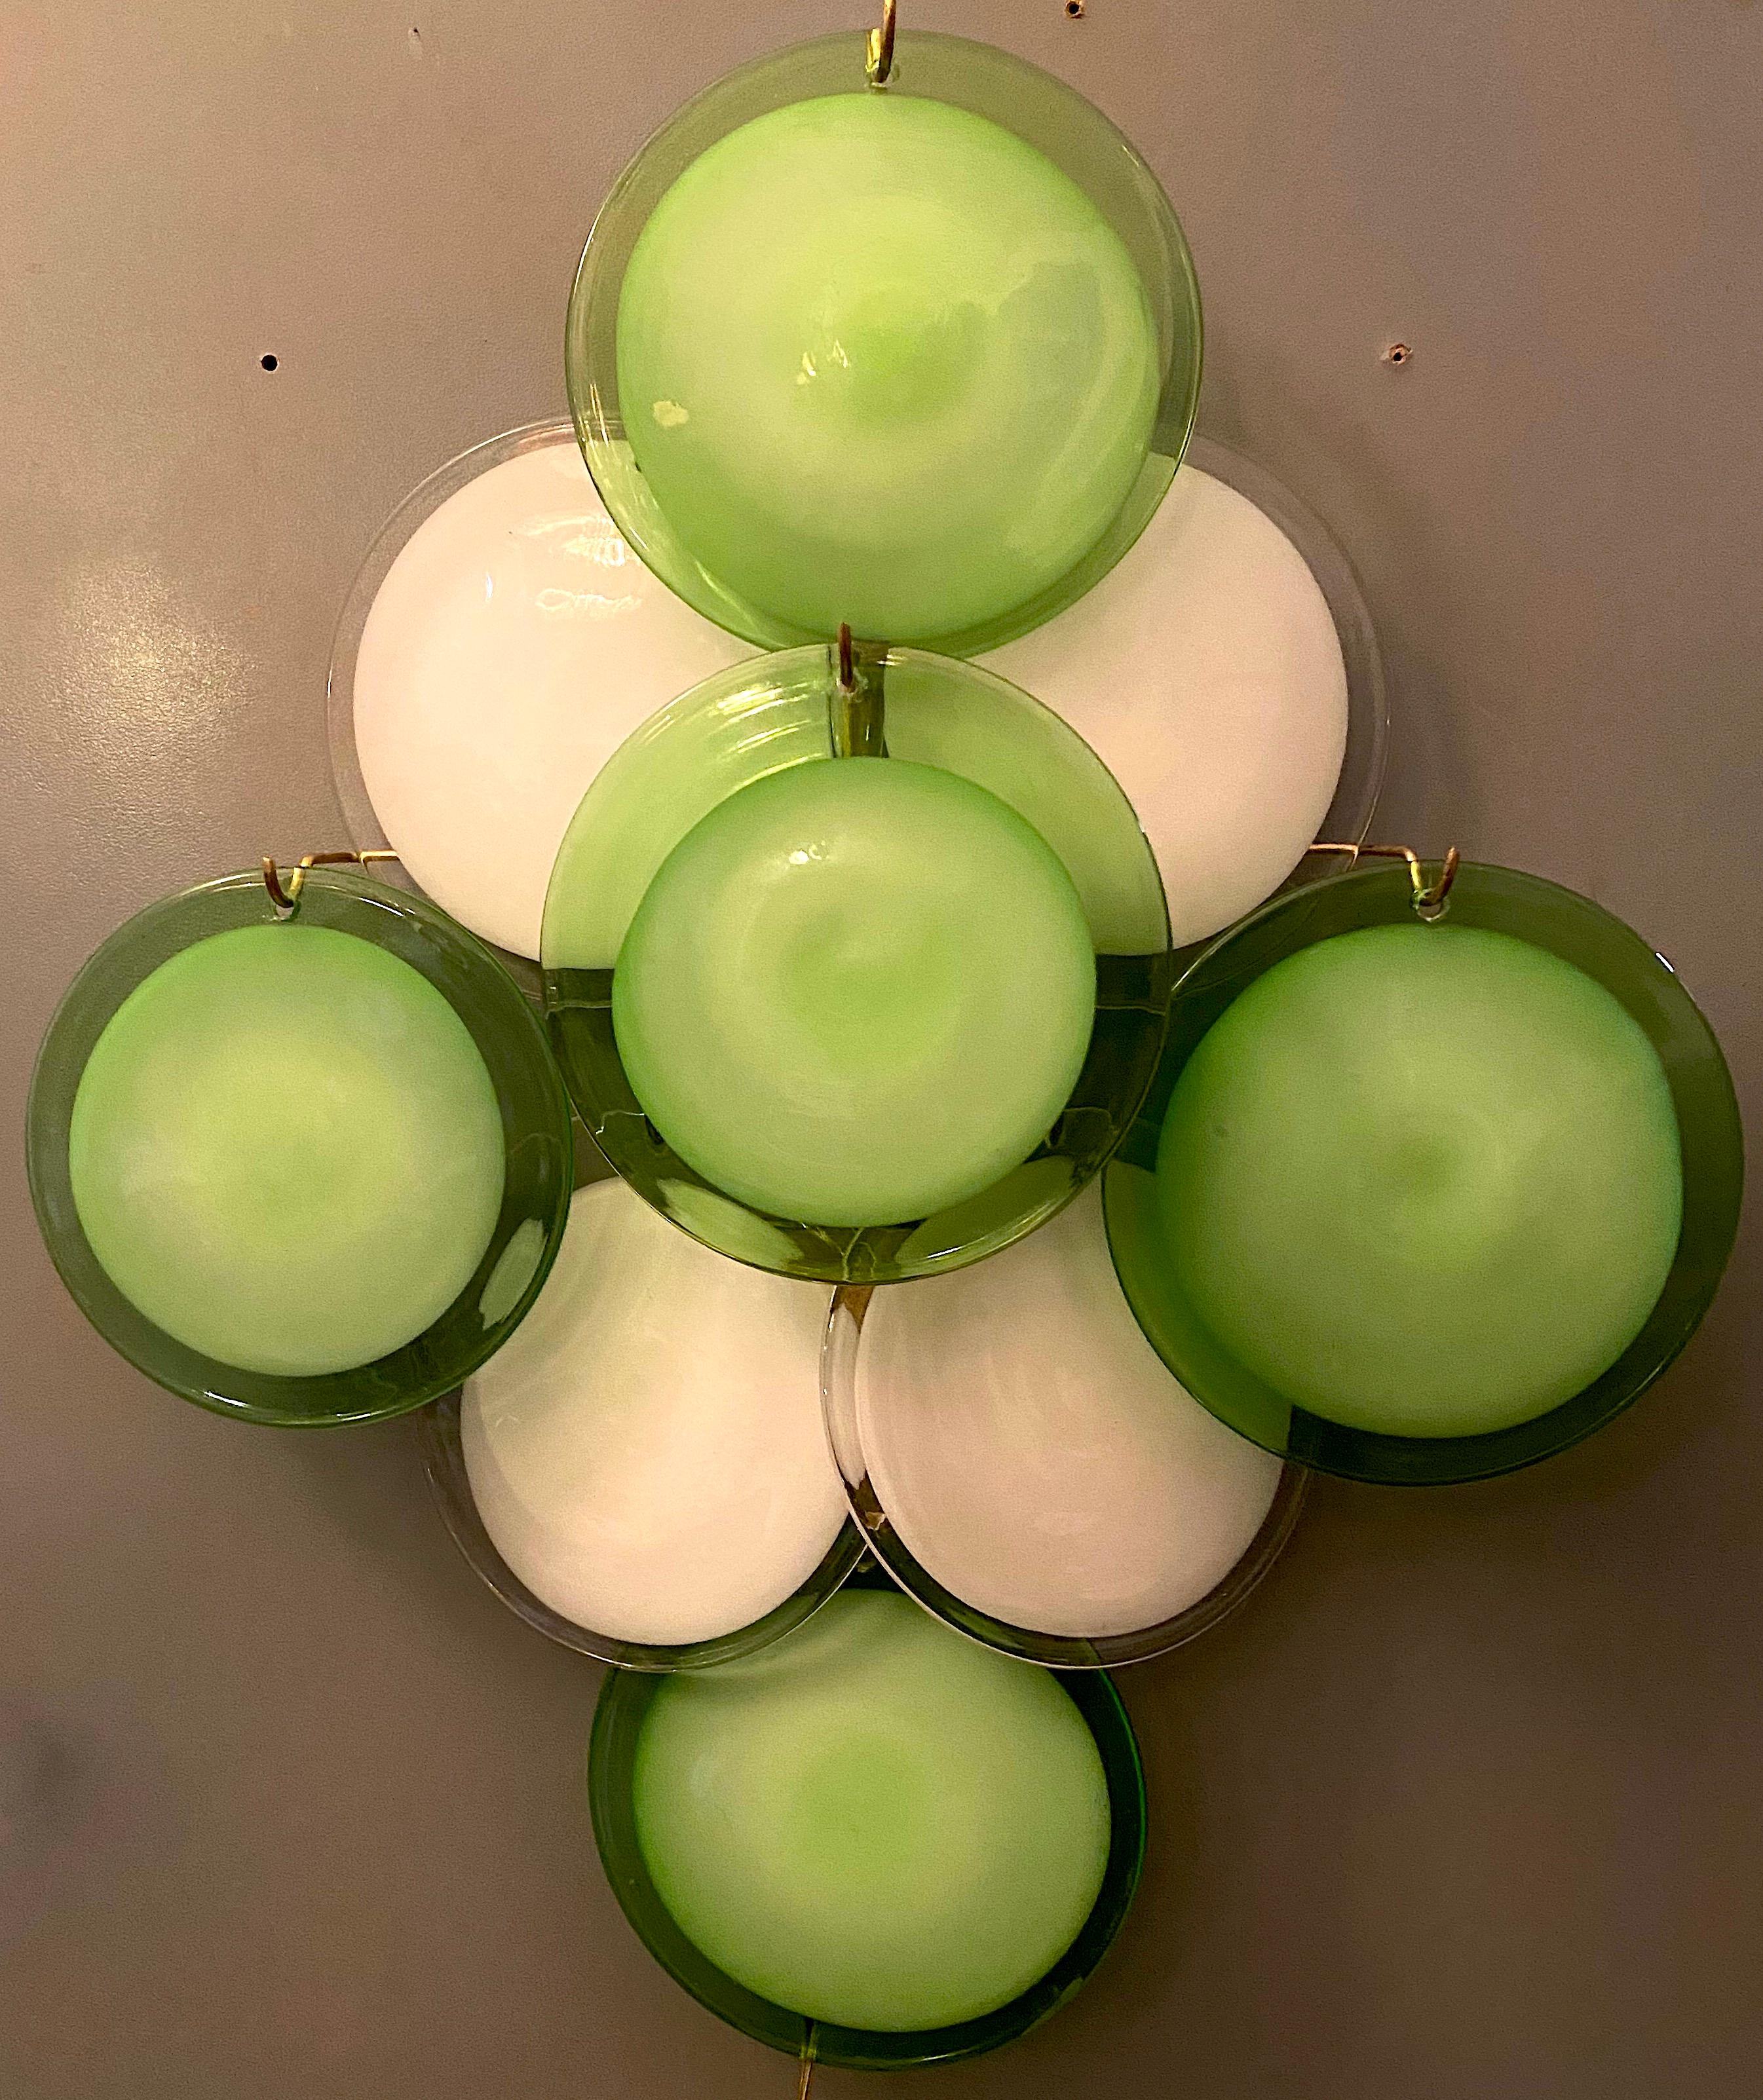 Étonnante paire d'appliques avec neuf disques verts et blancs de Vistosi, Murano.
Disponibles en deux paires ainsi que le lustre assorti. Référence de l'article LU98593828532
Deux ampoules E14.
Nous pouvons refaire l'installation électrique selon